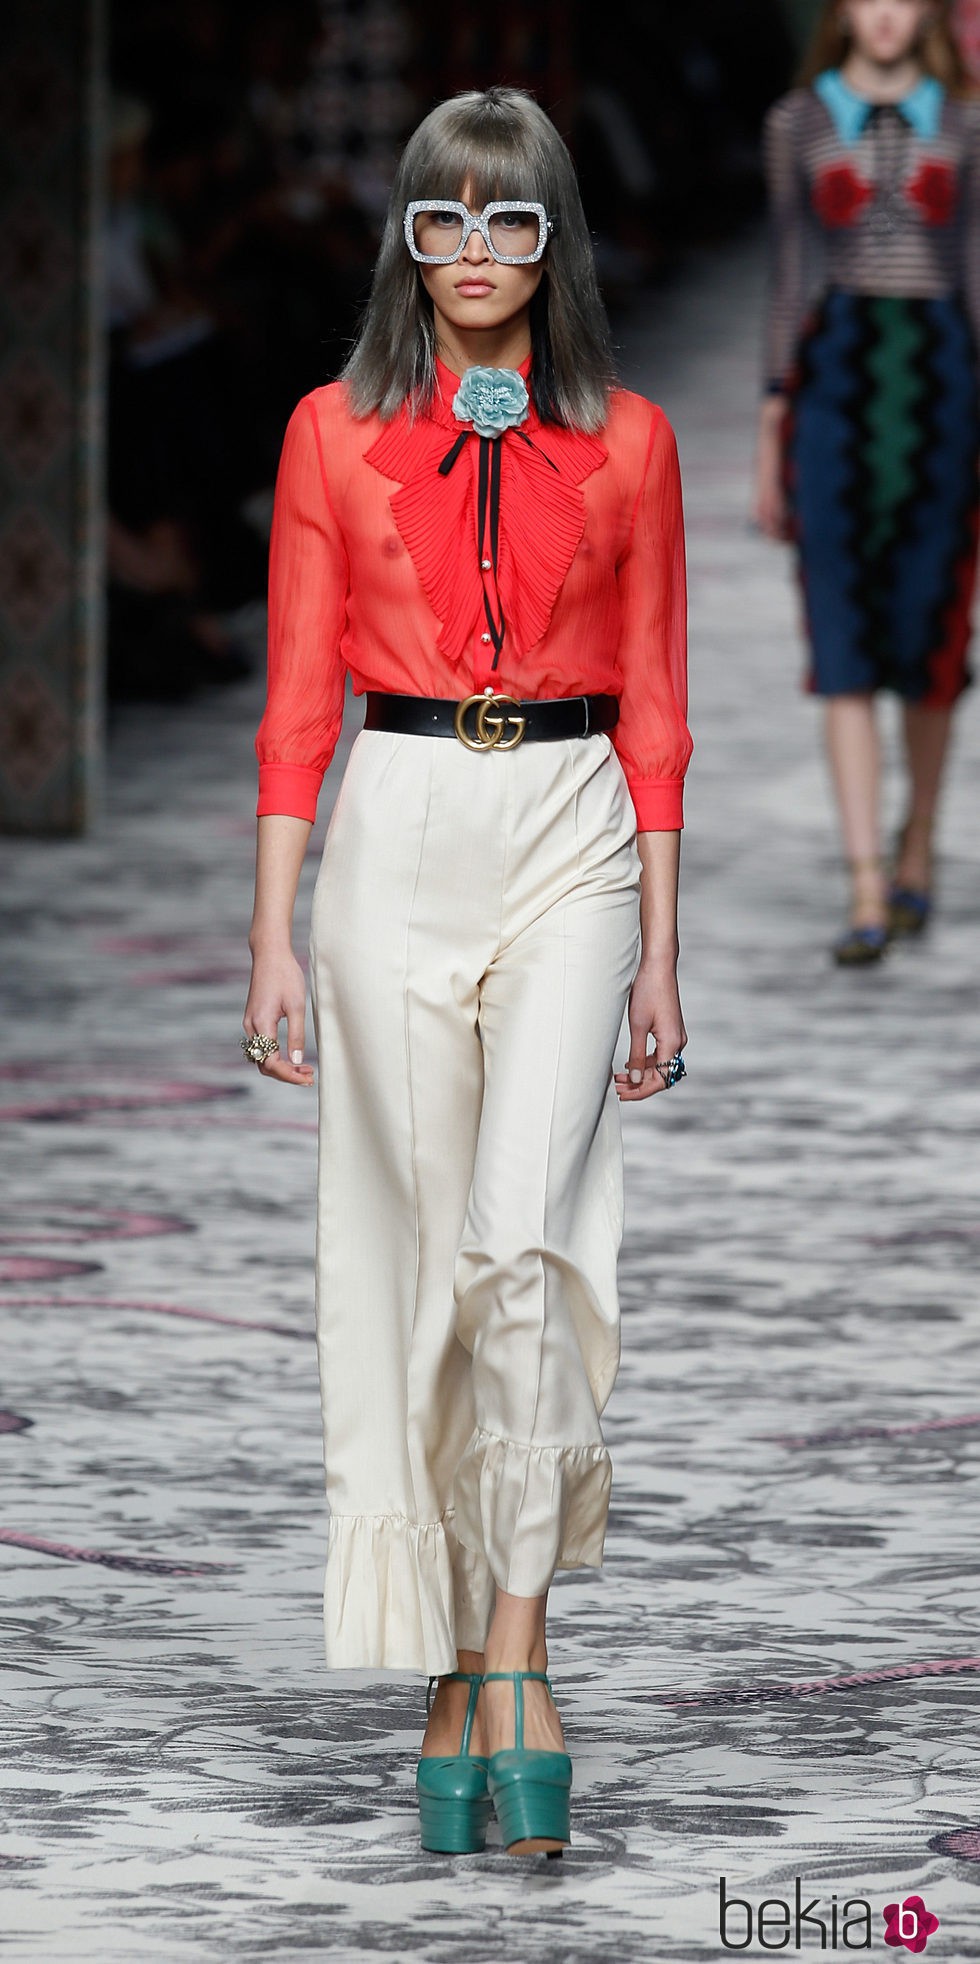 Pantalon beige y camisa roja de primavera/verano 2016 de Gucci en Milan Fashion Week